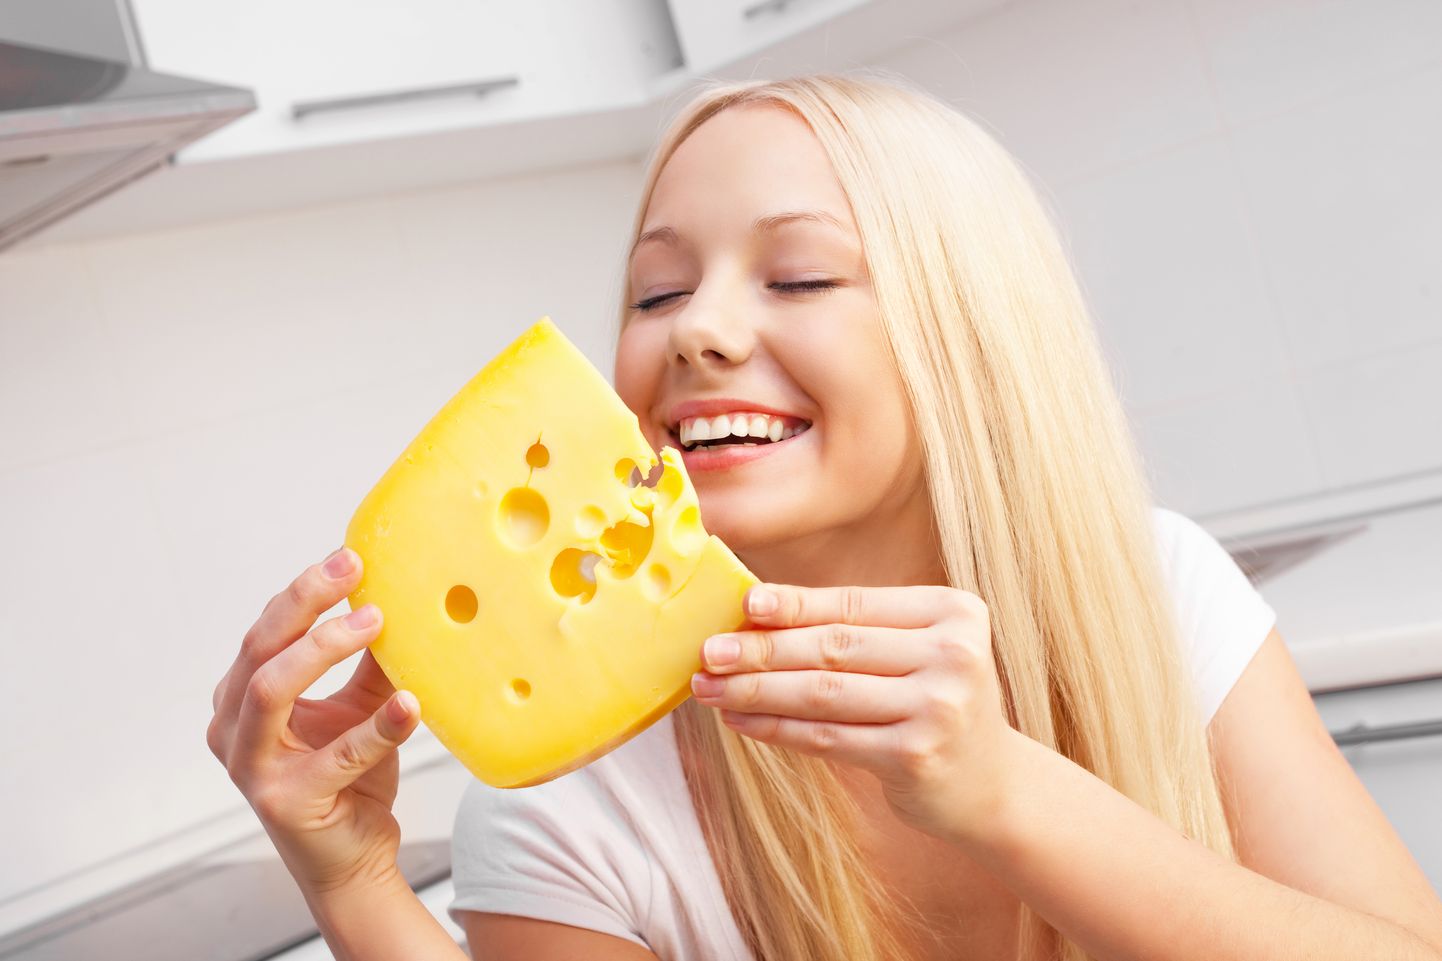 Оказывается, сыр вызывает привыкание. Иллюстративное фото